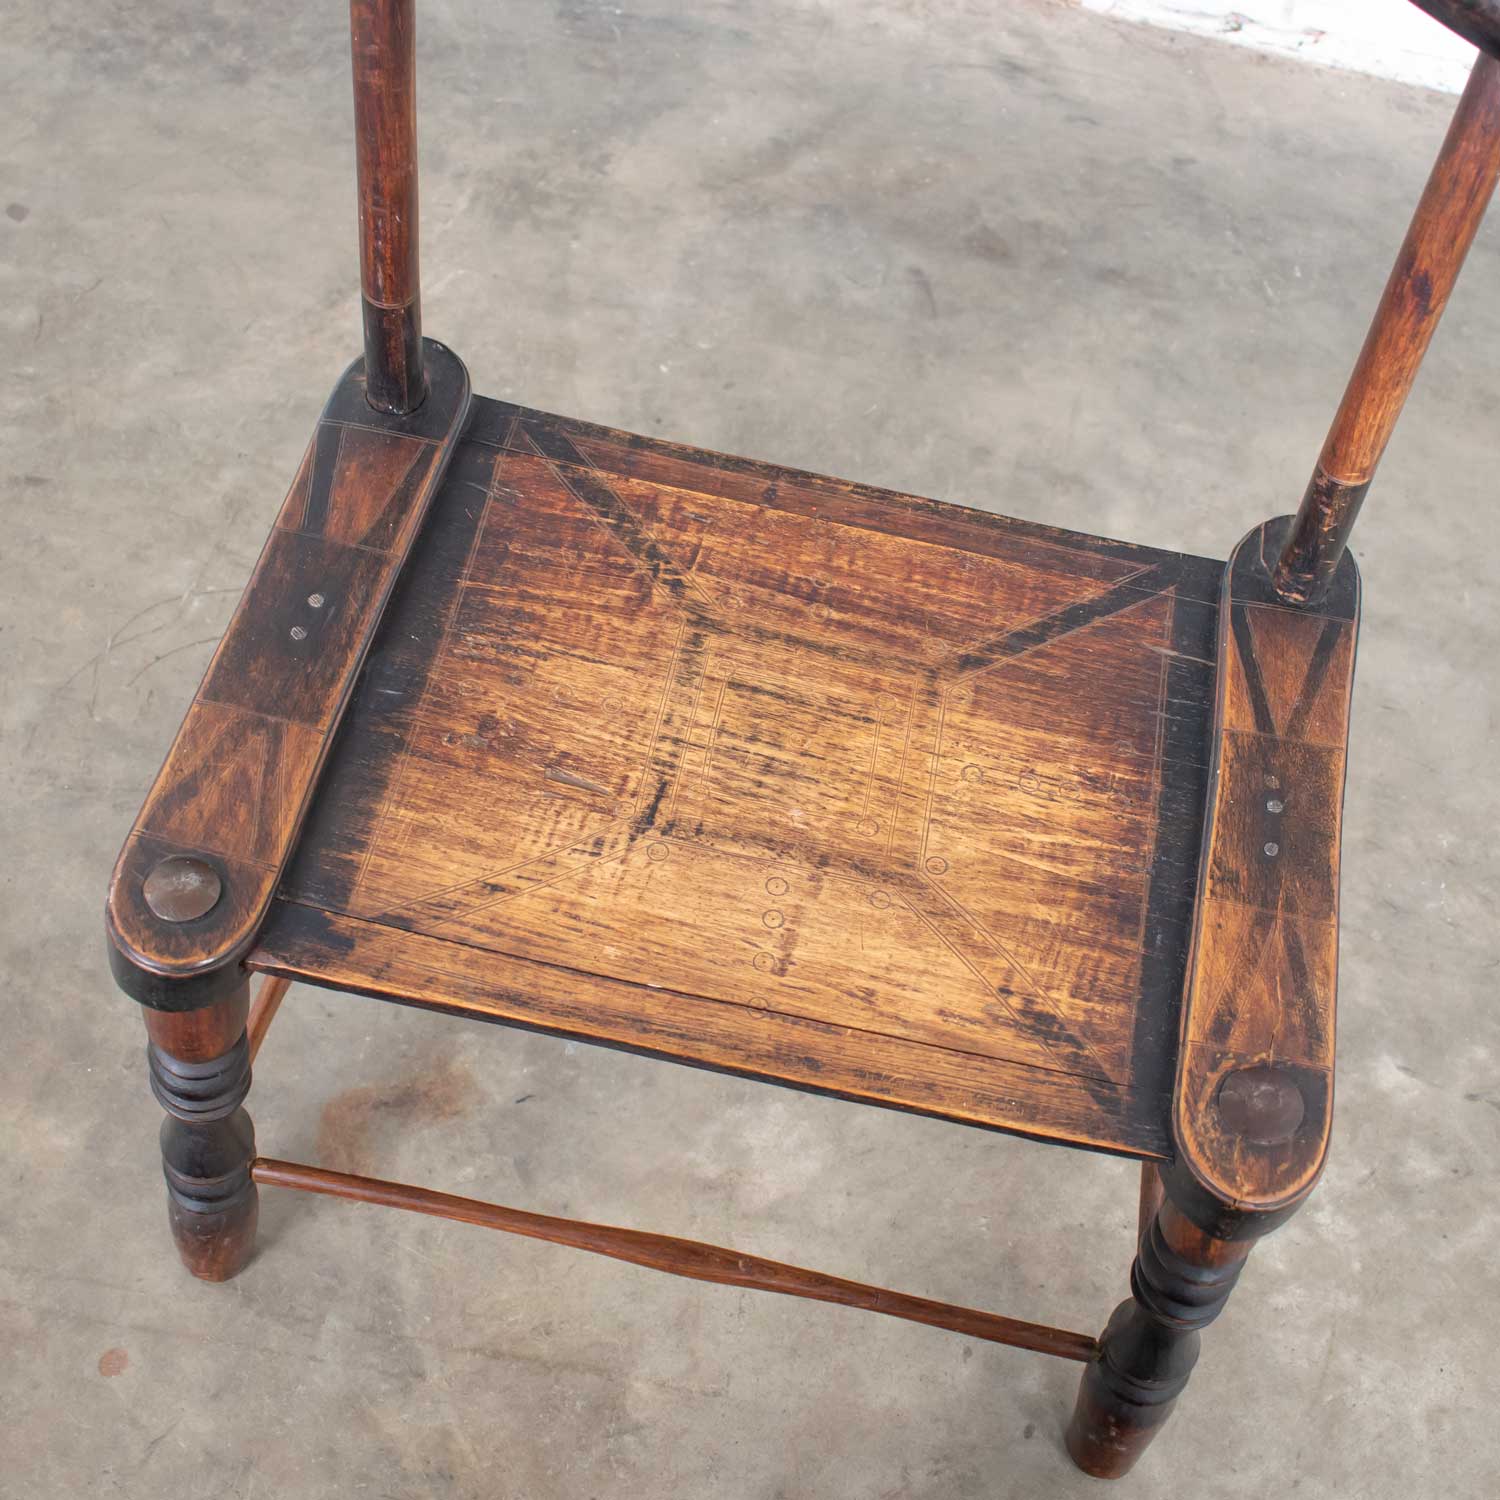 African Vintage Hand Carved Baule Tribal Low Chair Yoke Back